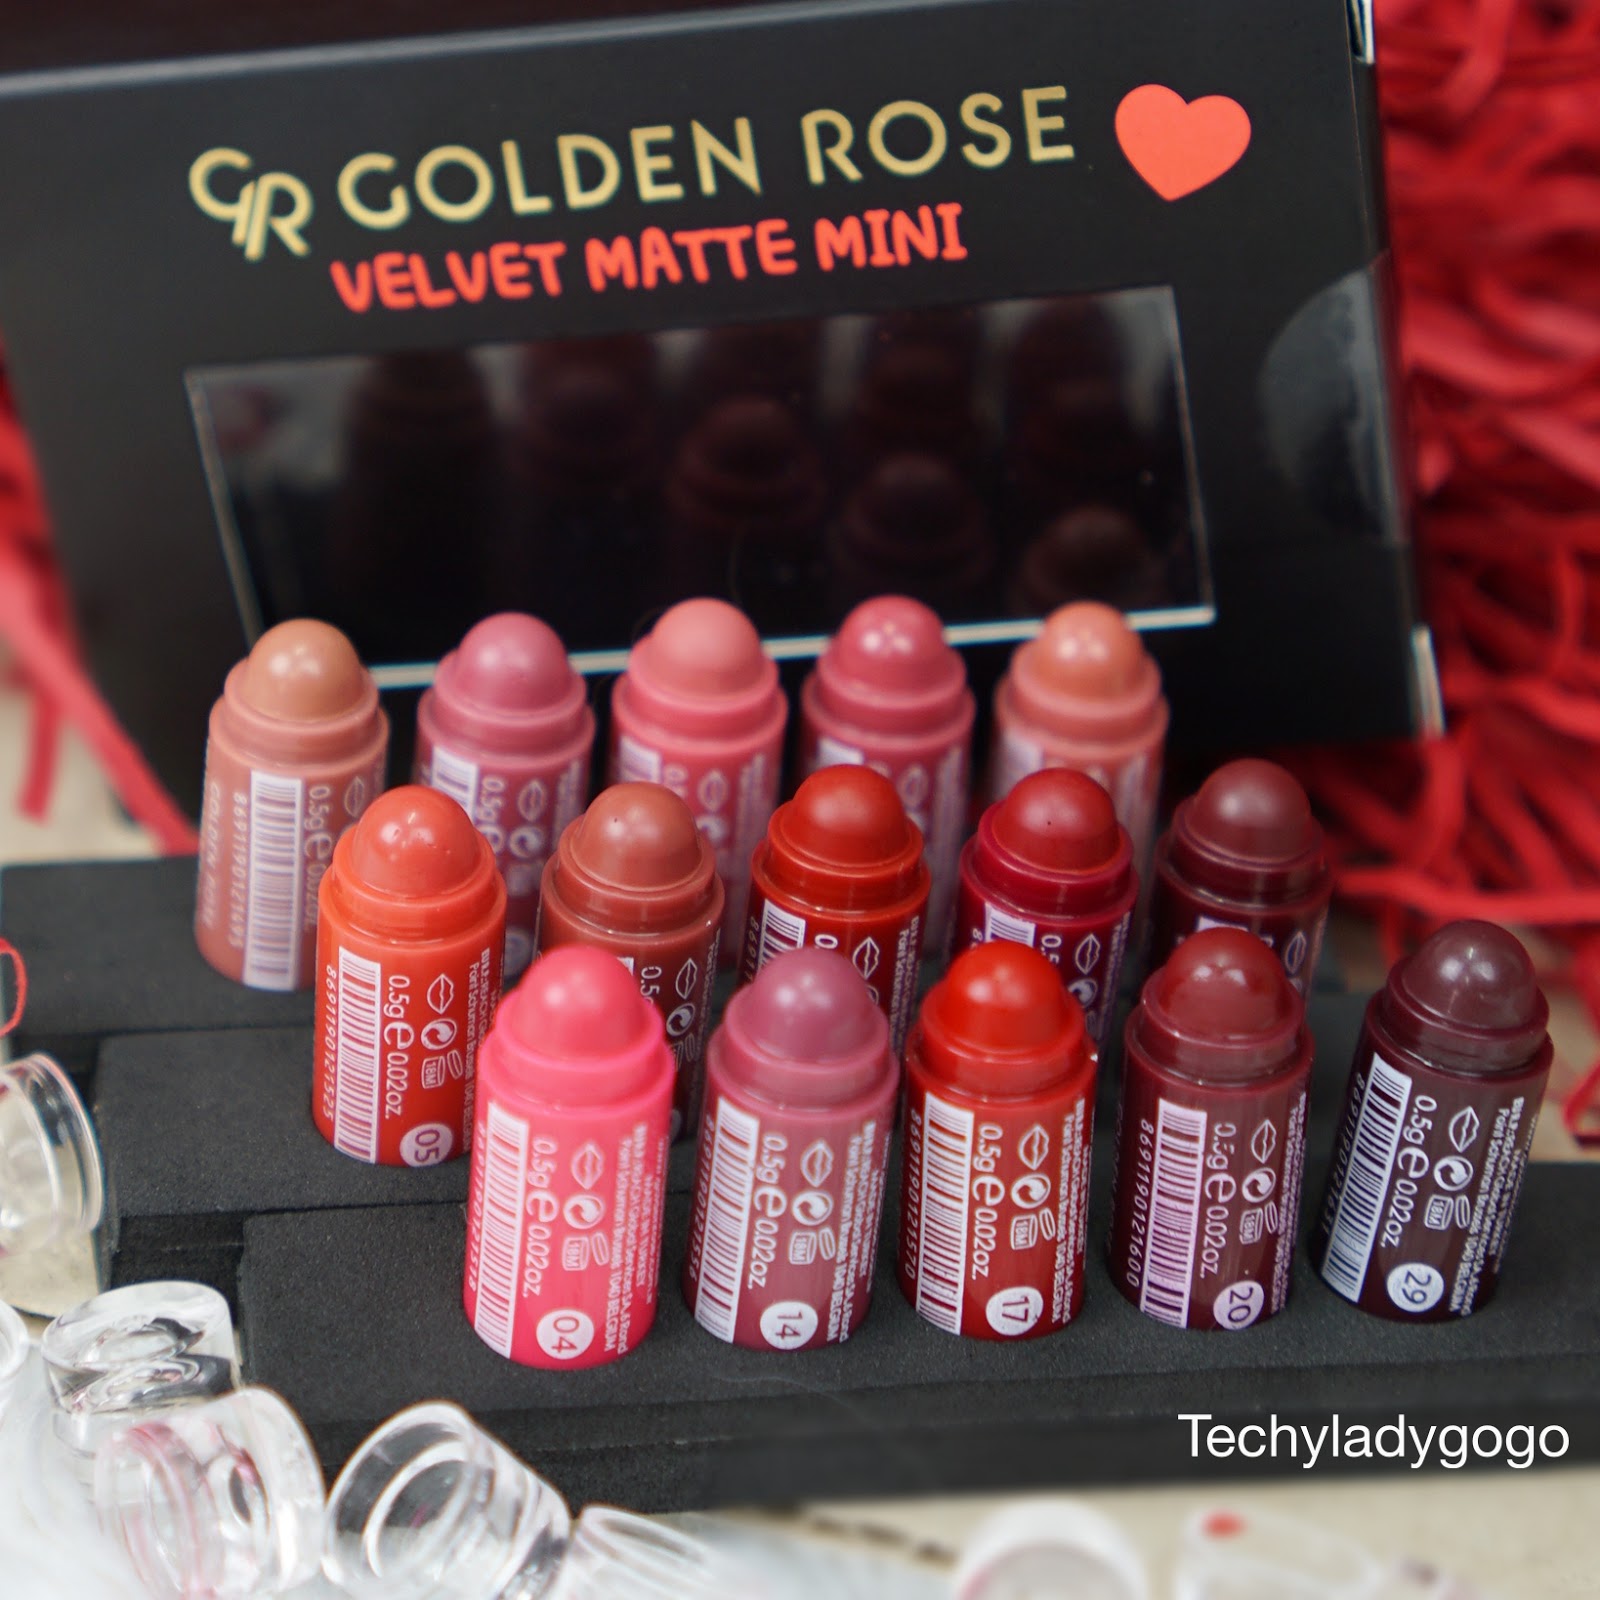 GR Golden Rose Velvet Matte Mini Lipstick ลิปจิ๋วแต่แจ๋ว